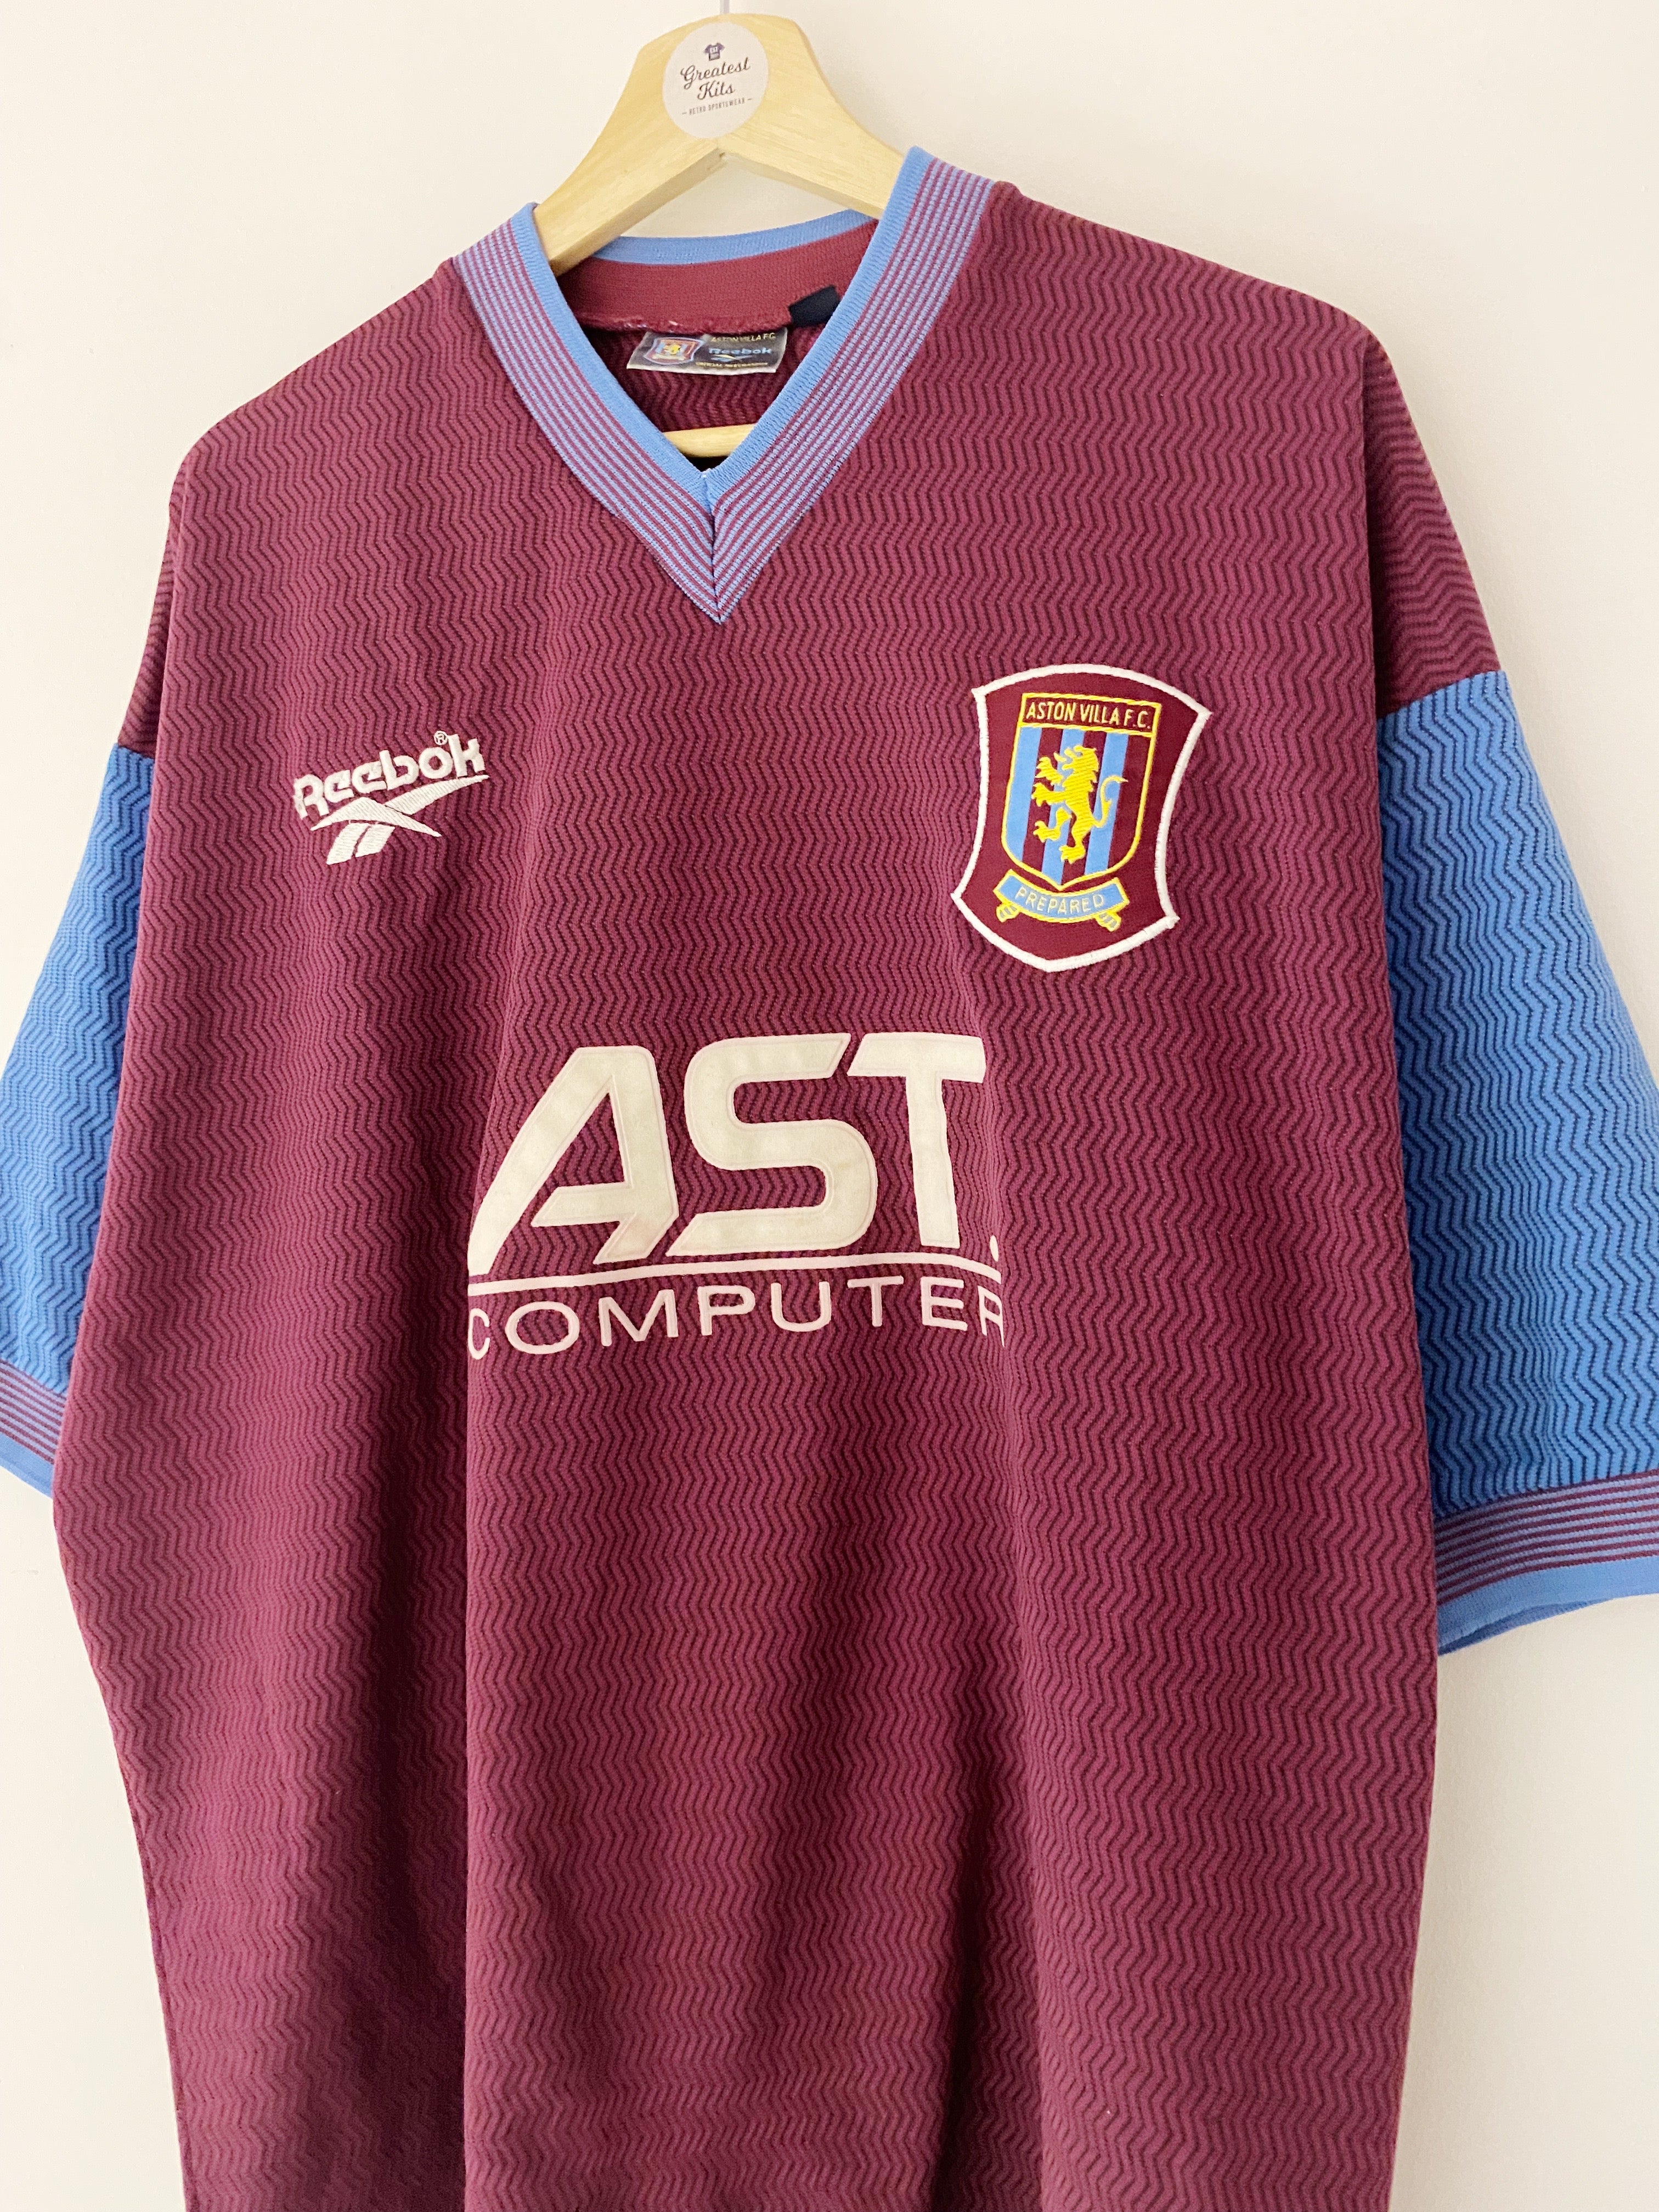 Maillot domicile Aston Villa 1997/98 (XL) 8.5/10